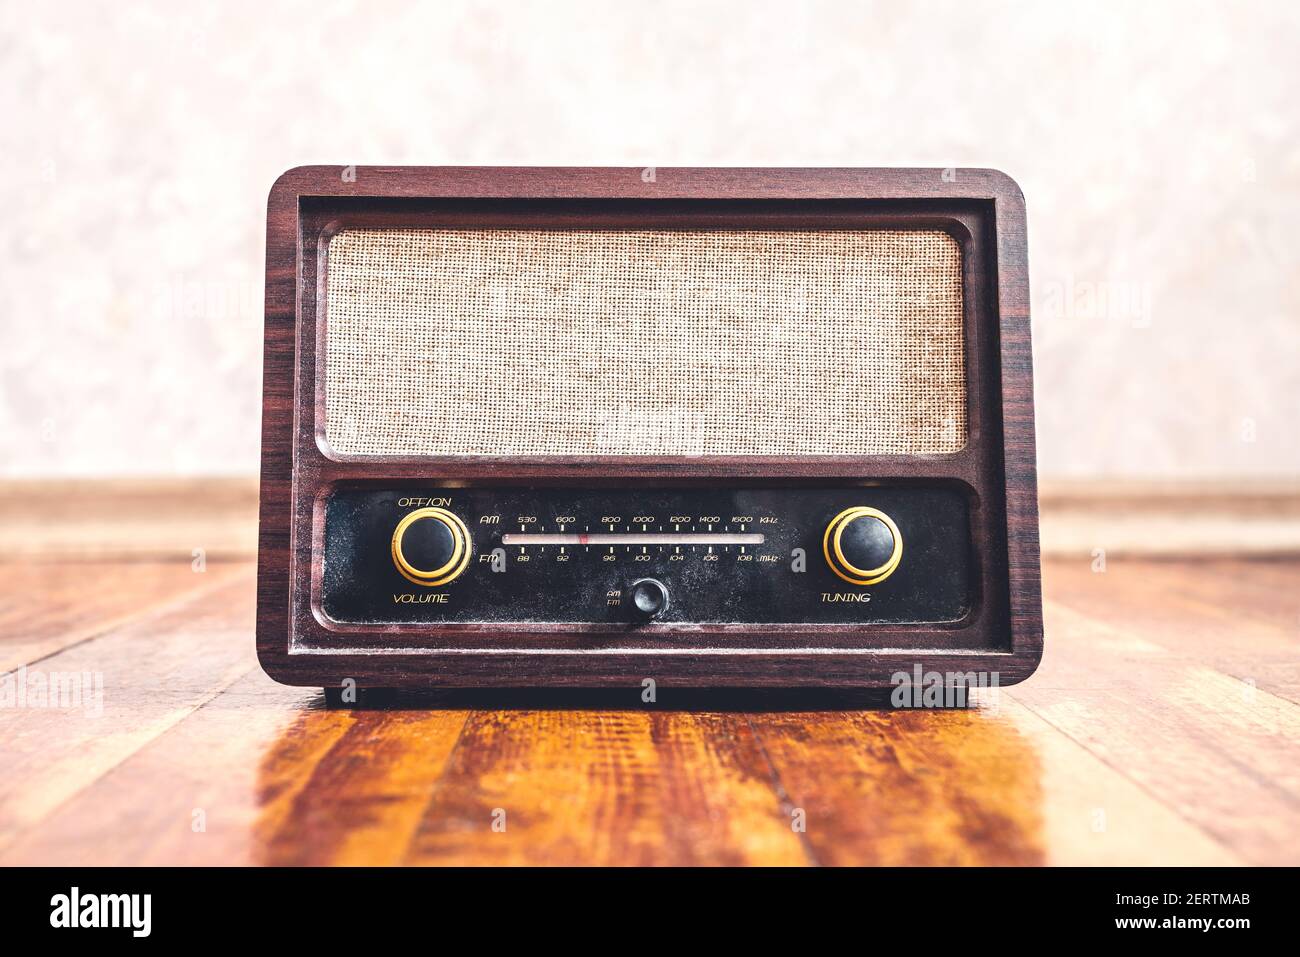 Radio retro vintage. Nostalgia de la música con el viejo estilo de los años 60. Altavoz y receptor polvorientos sobre madera. Mandos y sintonizador de frecuencia, vista frontal. Foto de stock